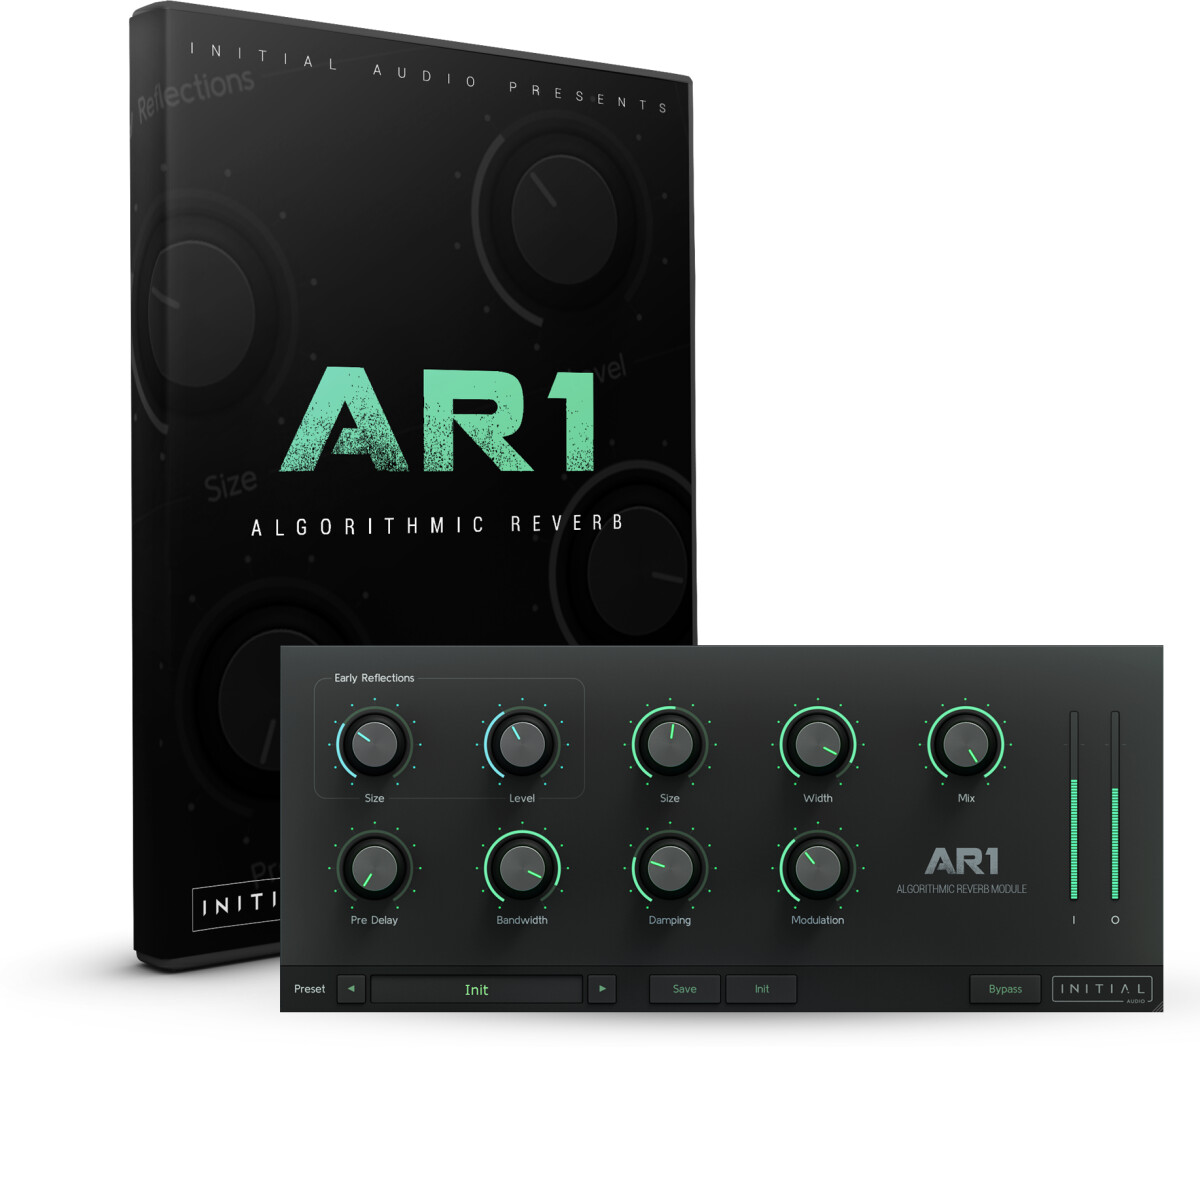 Initial Audio lance la réverbe algorithmique logicielle AR1